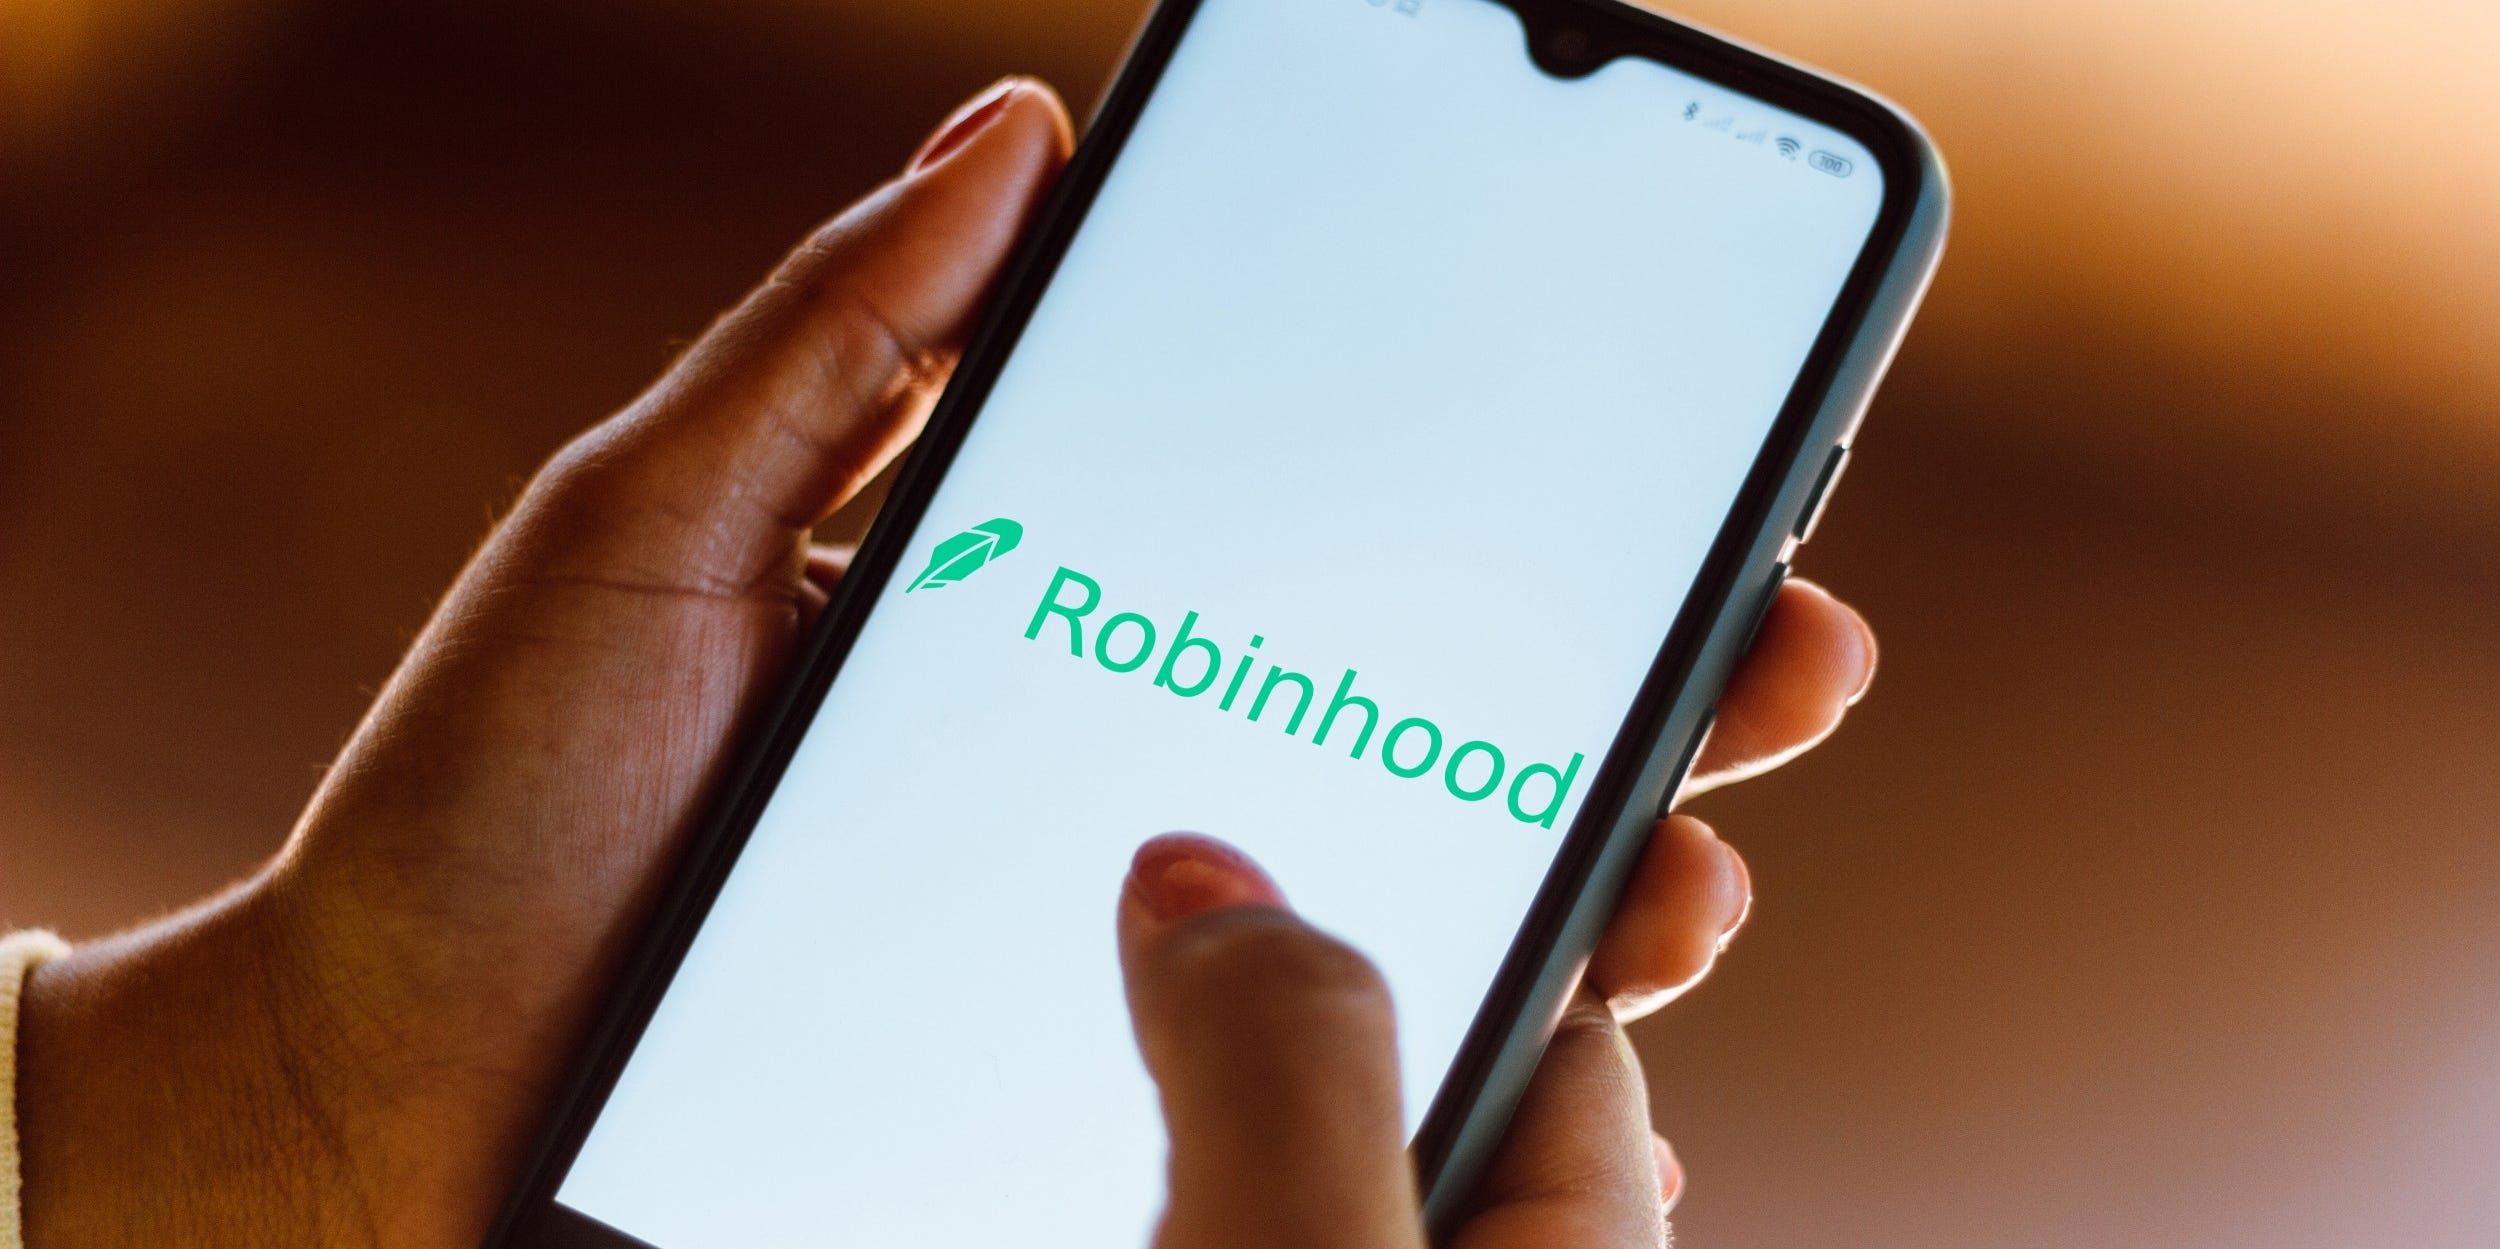 Robinhood app on phone